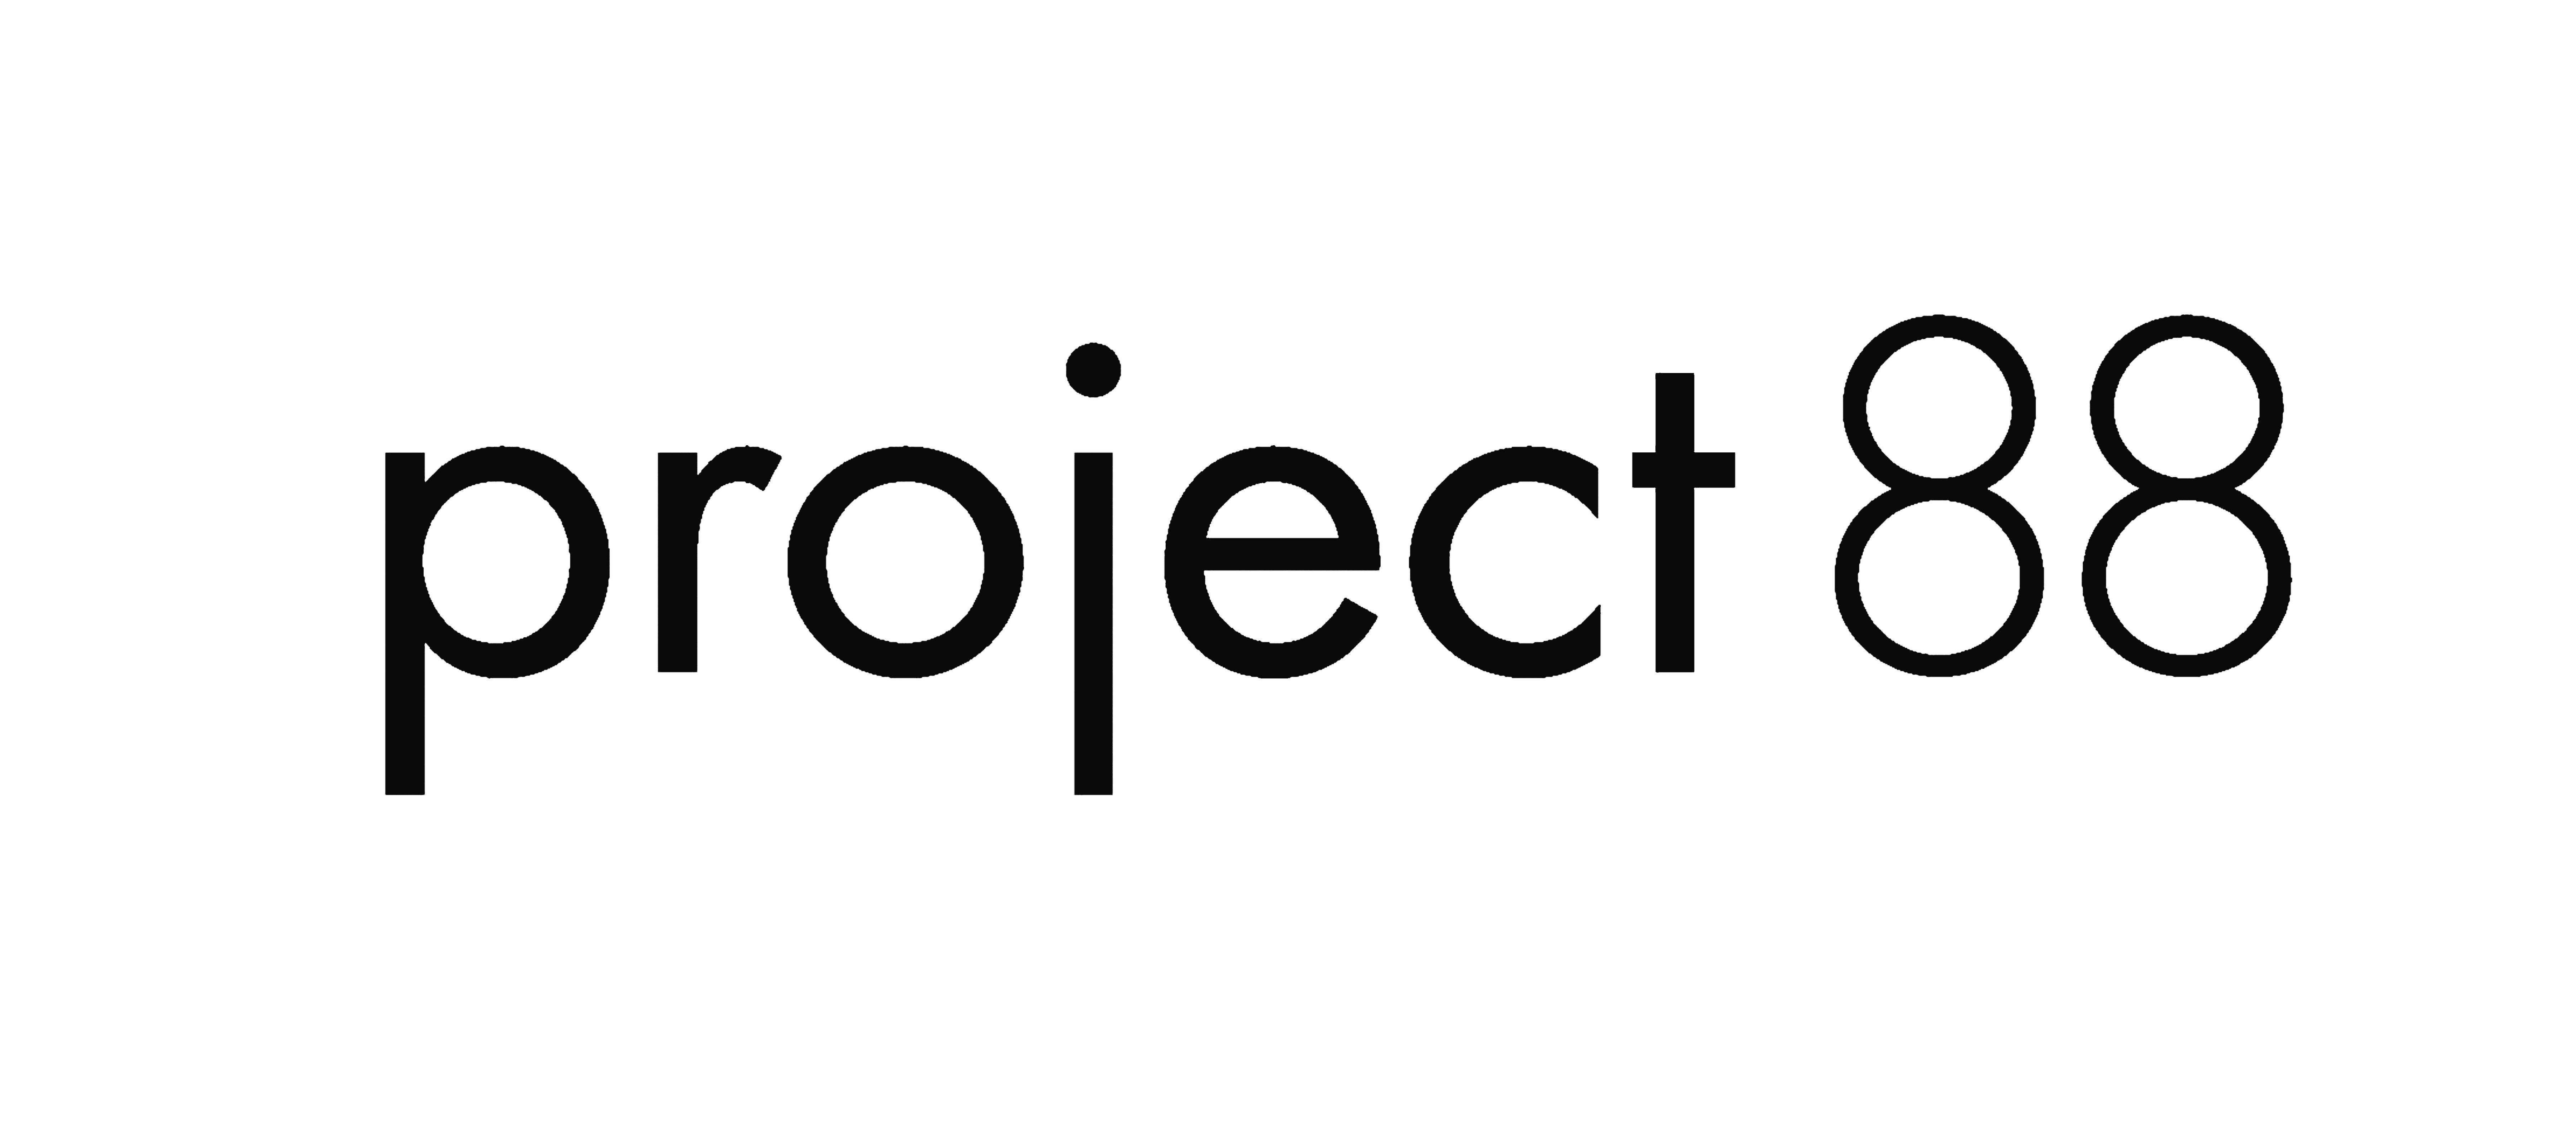 Project 88 company logo